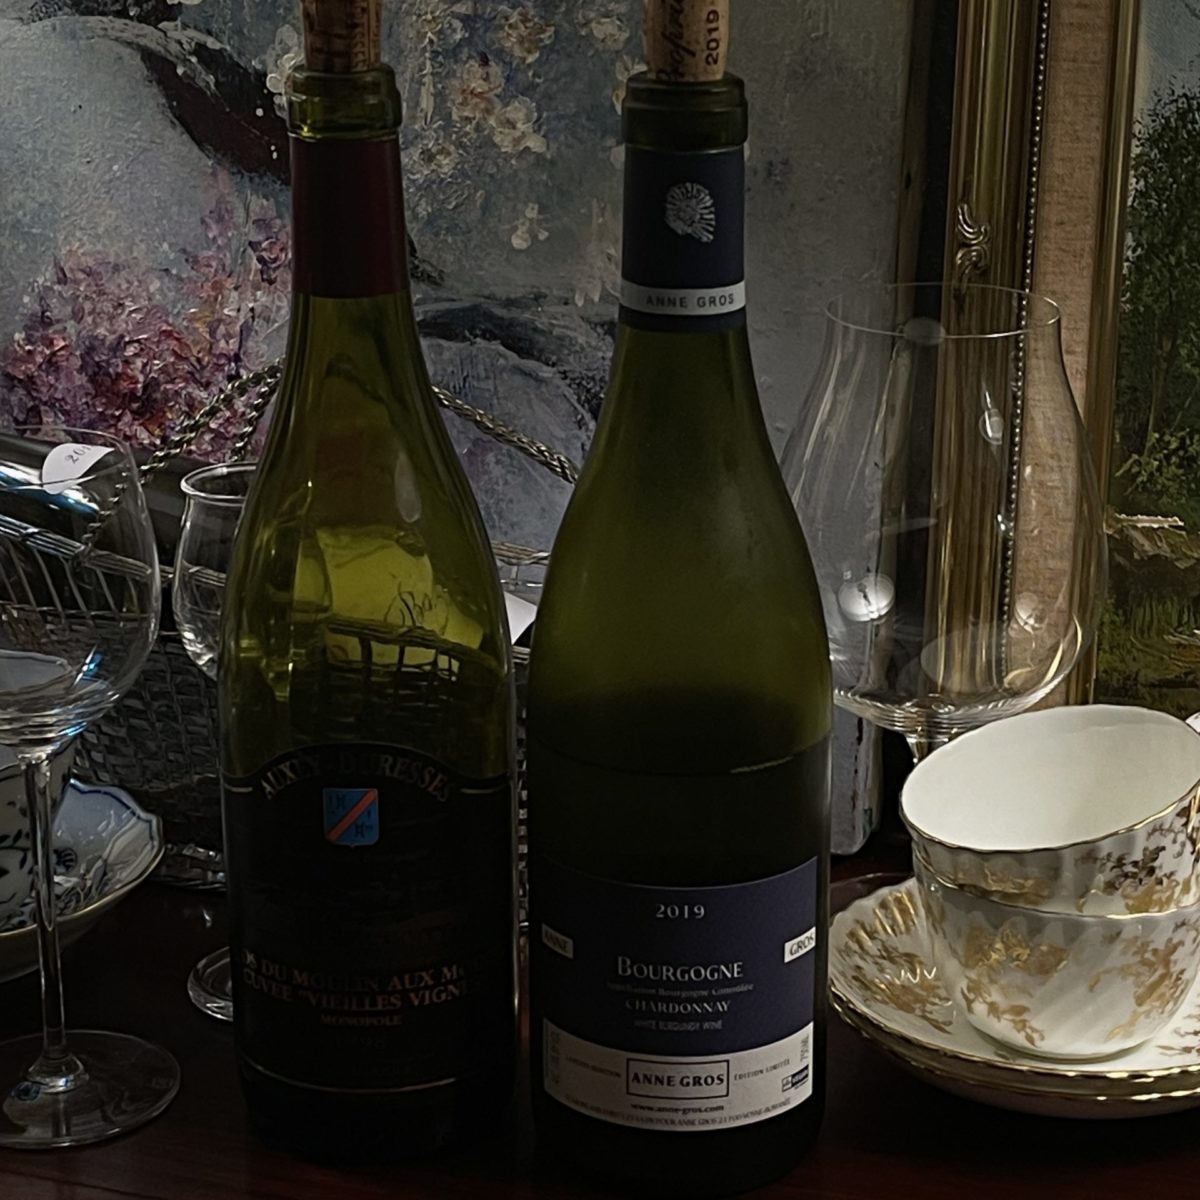 アンヌ・グロ Anne Gros / Bourgogne Chardonnay 2019